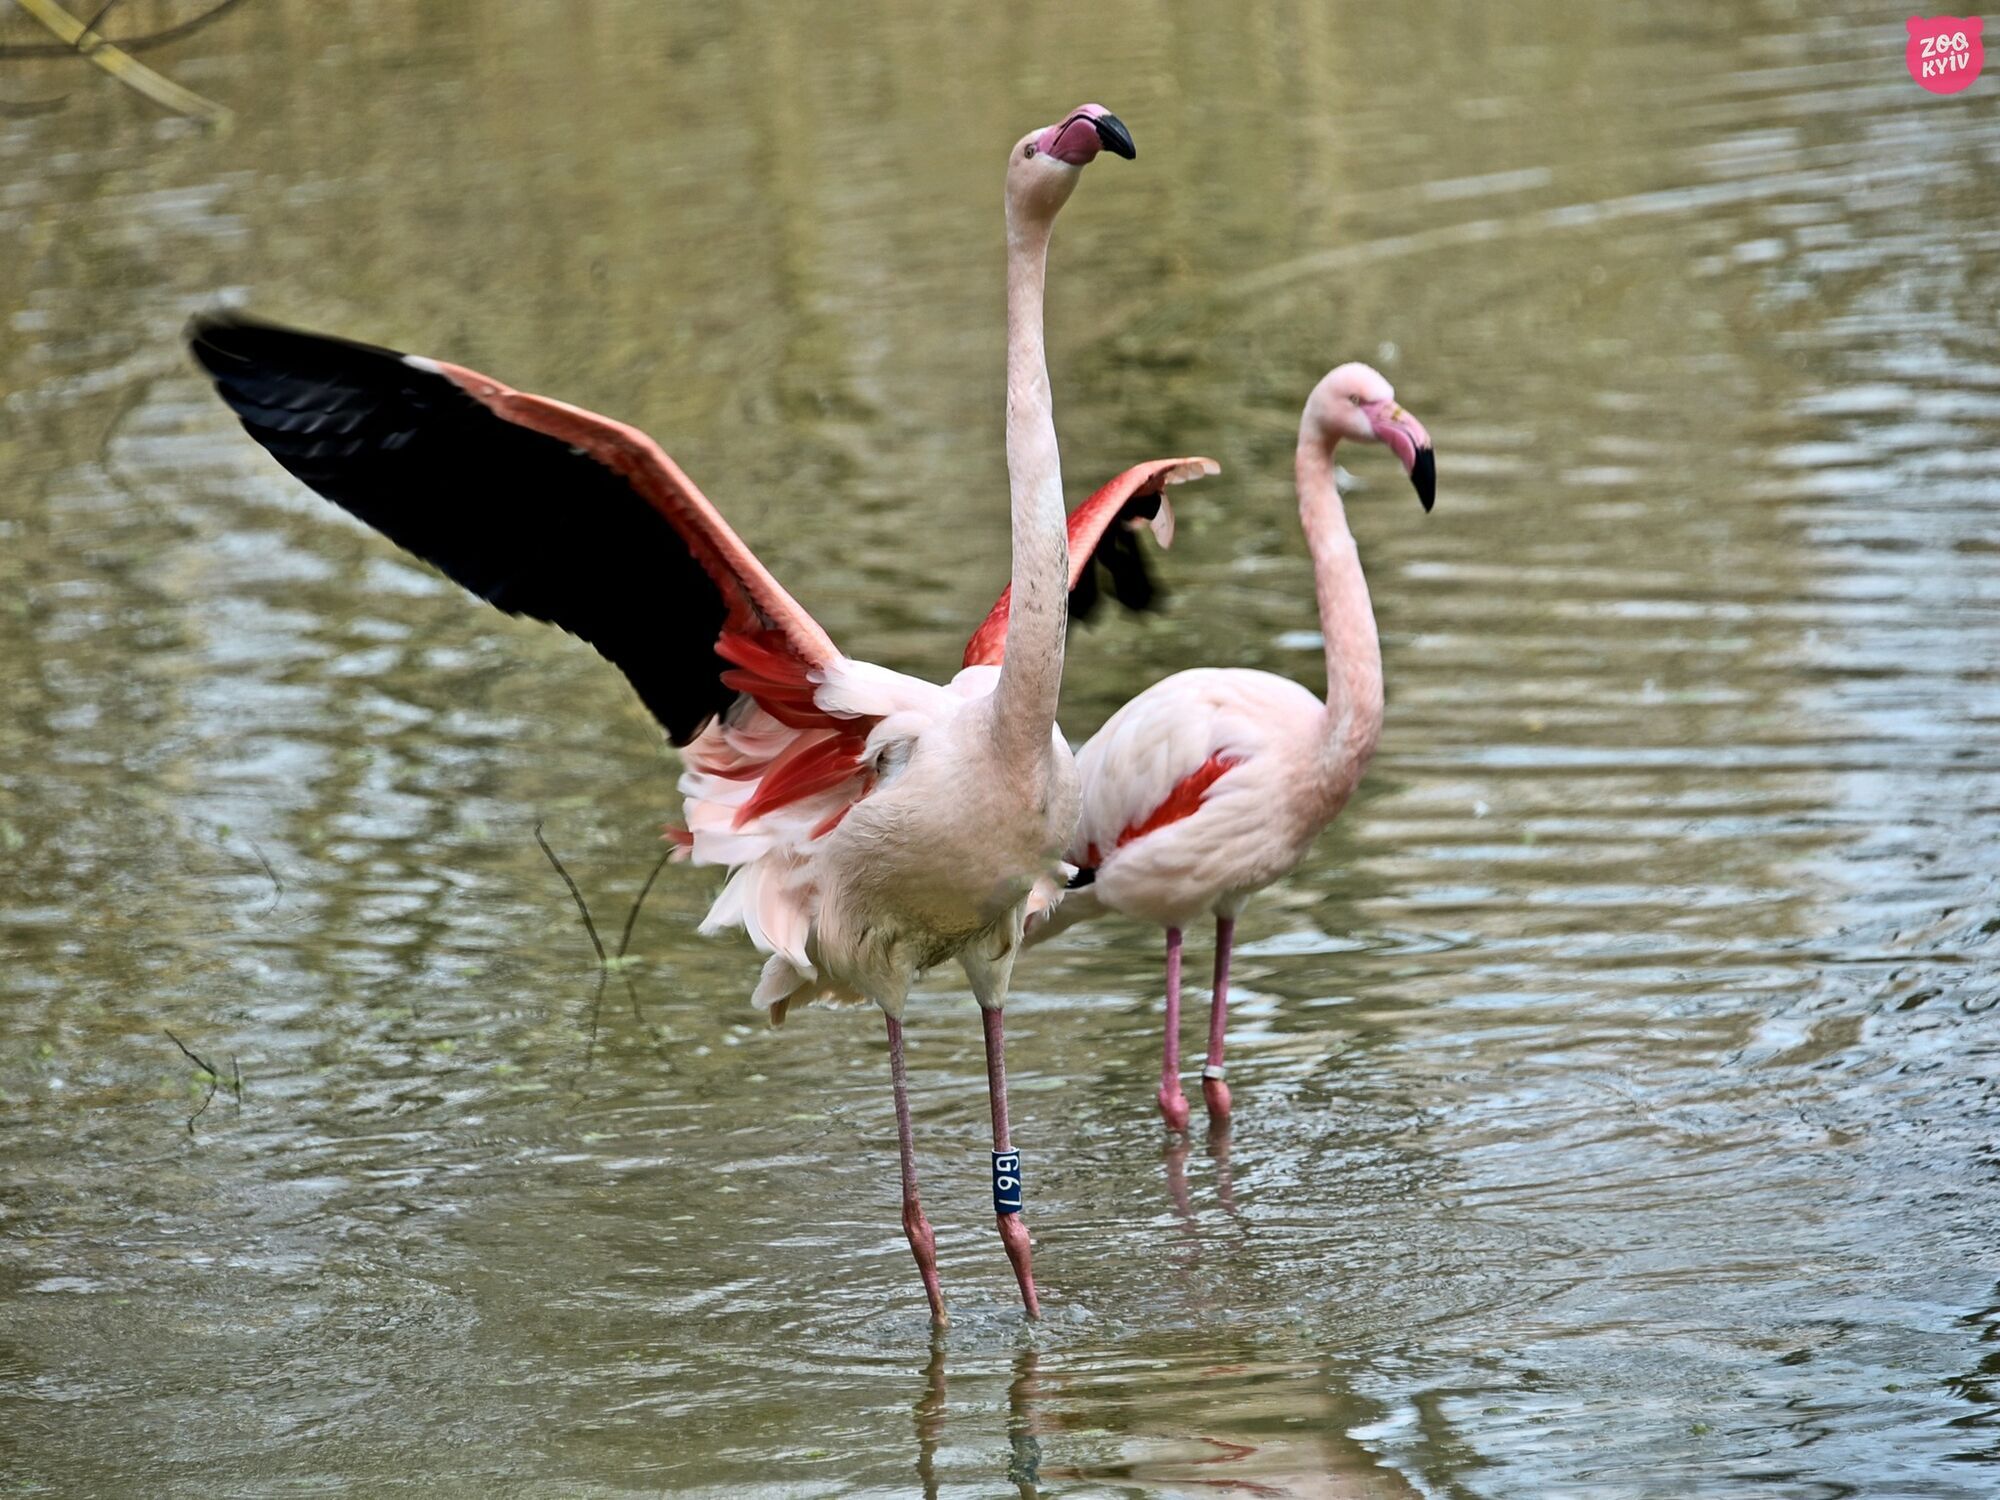 Новые зоны комфорта и пляжи: в Киевском зоопарке на свои летние озерные угодья вернулись розовые фламинго. Фото и видео